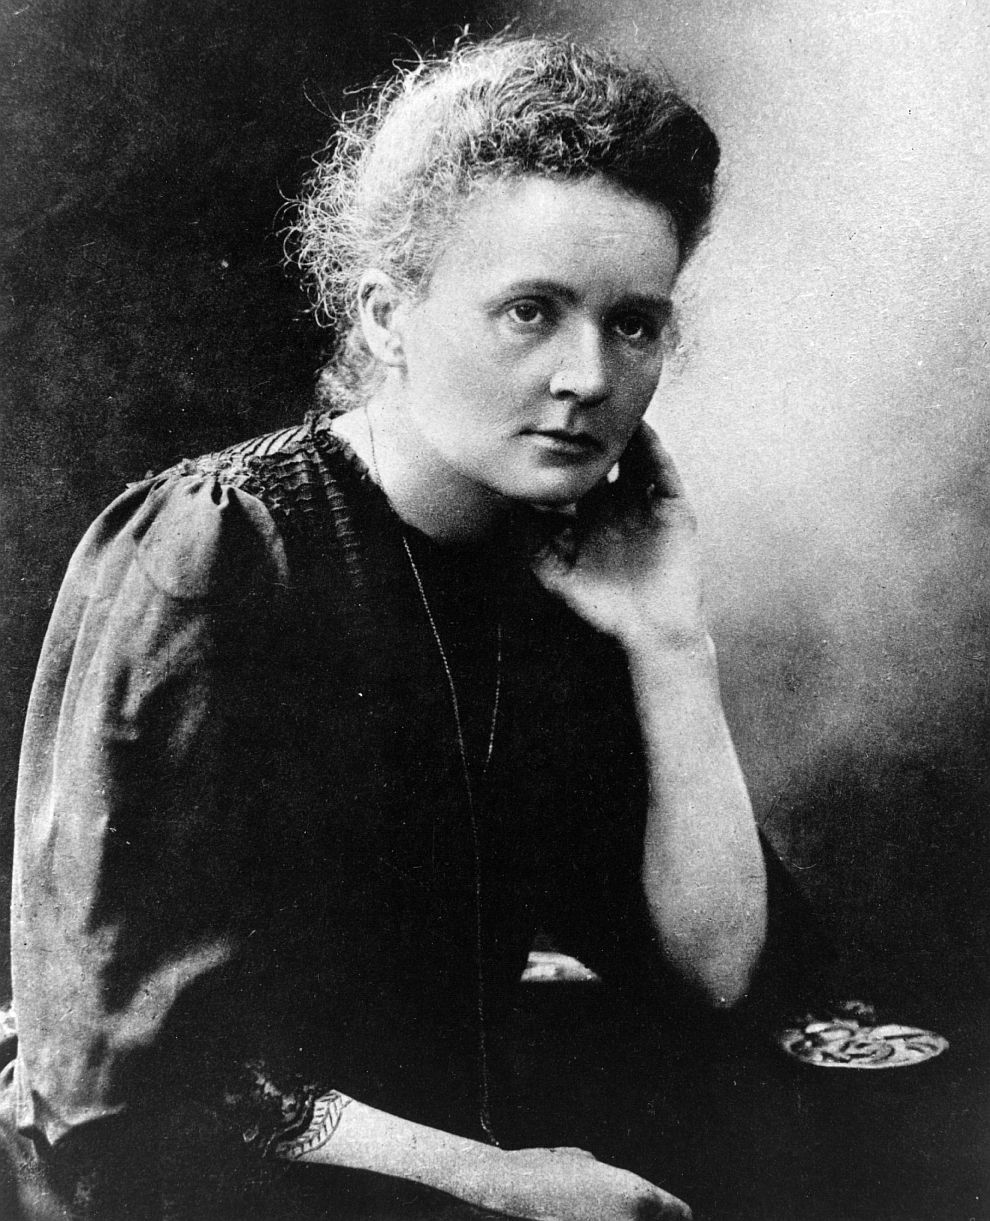 През 1911 г. Мария Кюри отново печели Нобелова награда, този път за химия, и става първият двукратен носител на престижното отличие.